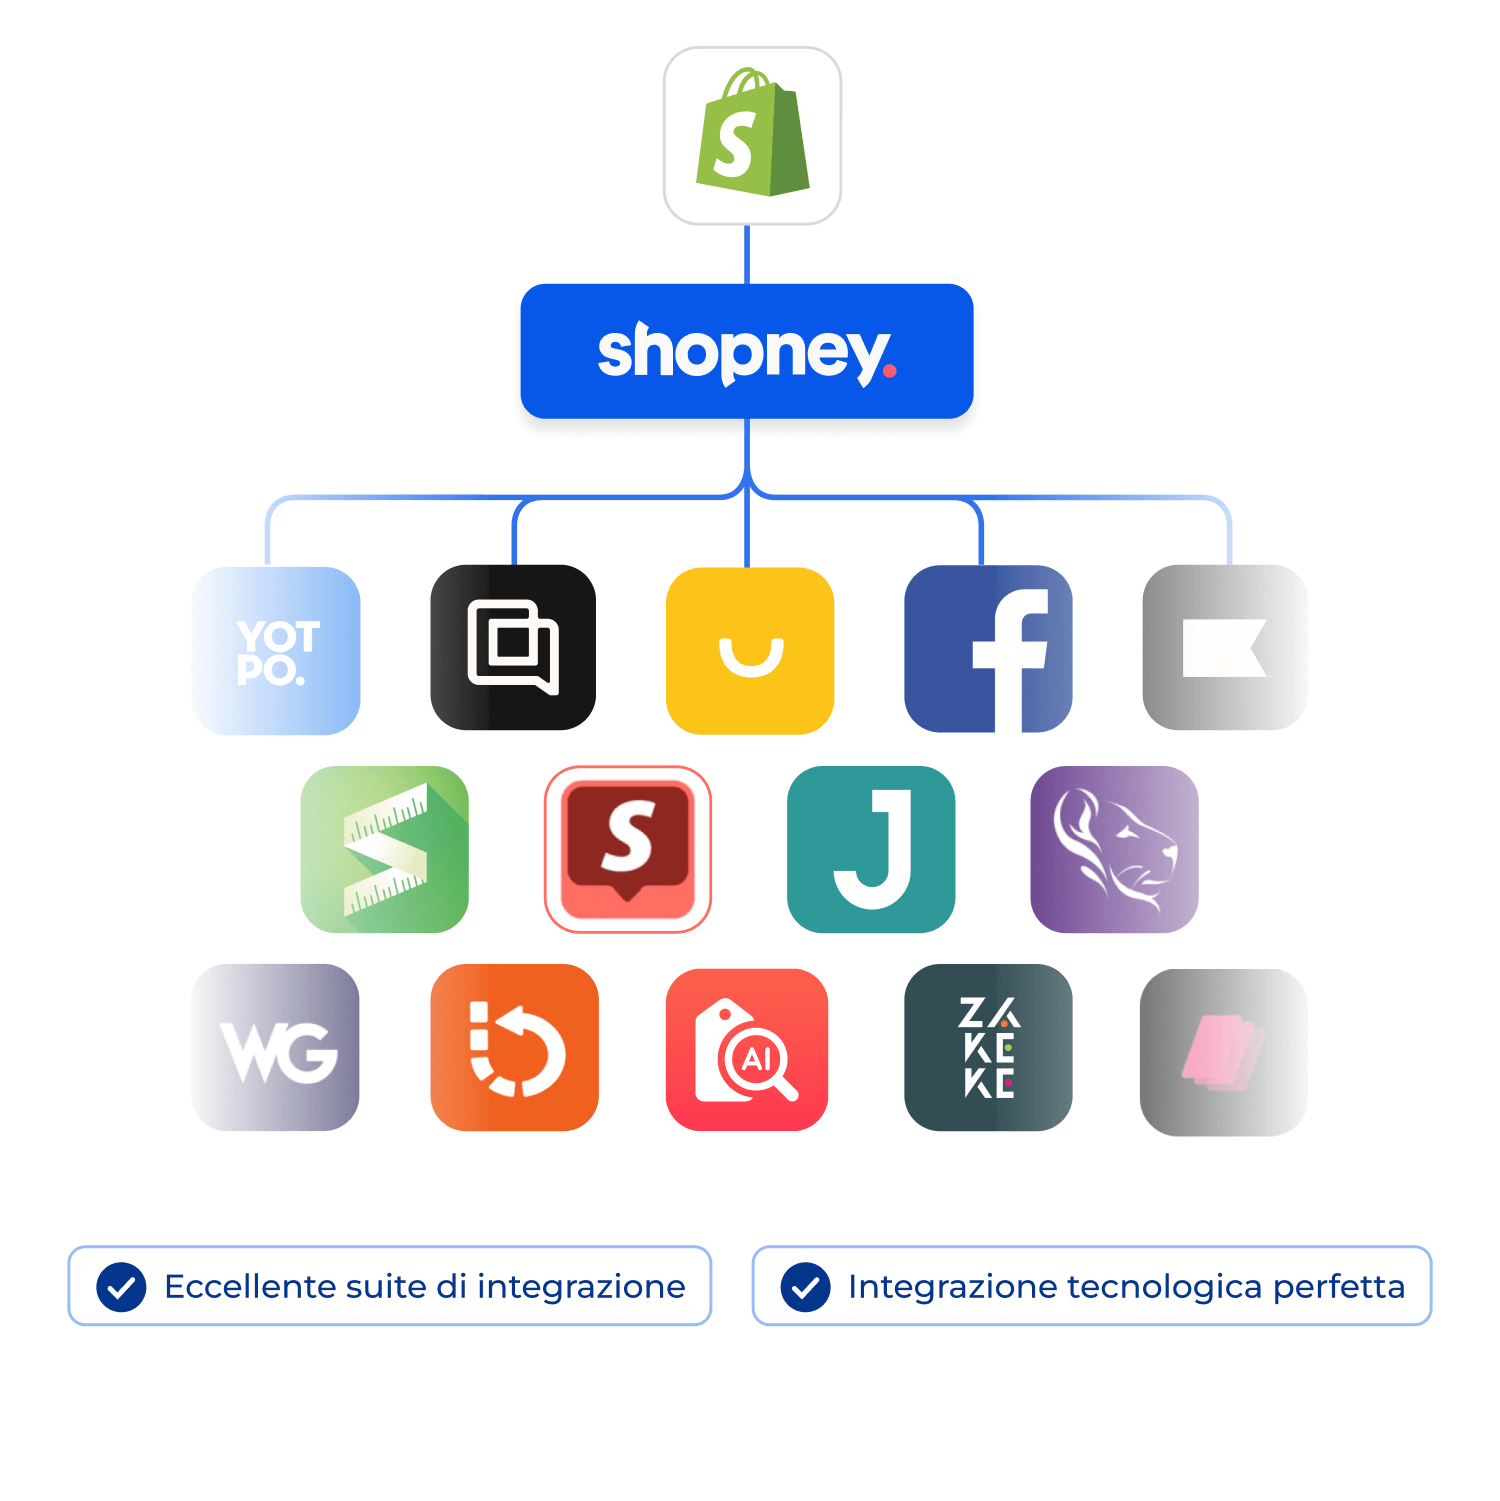 Le app di Shopify integrate con Shopney